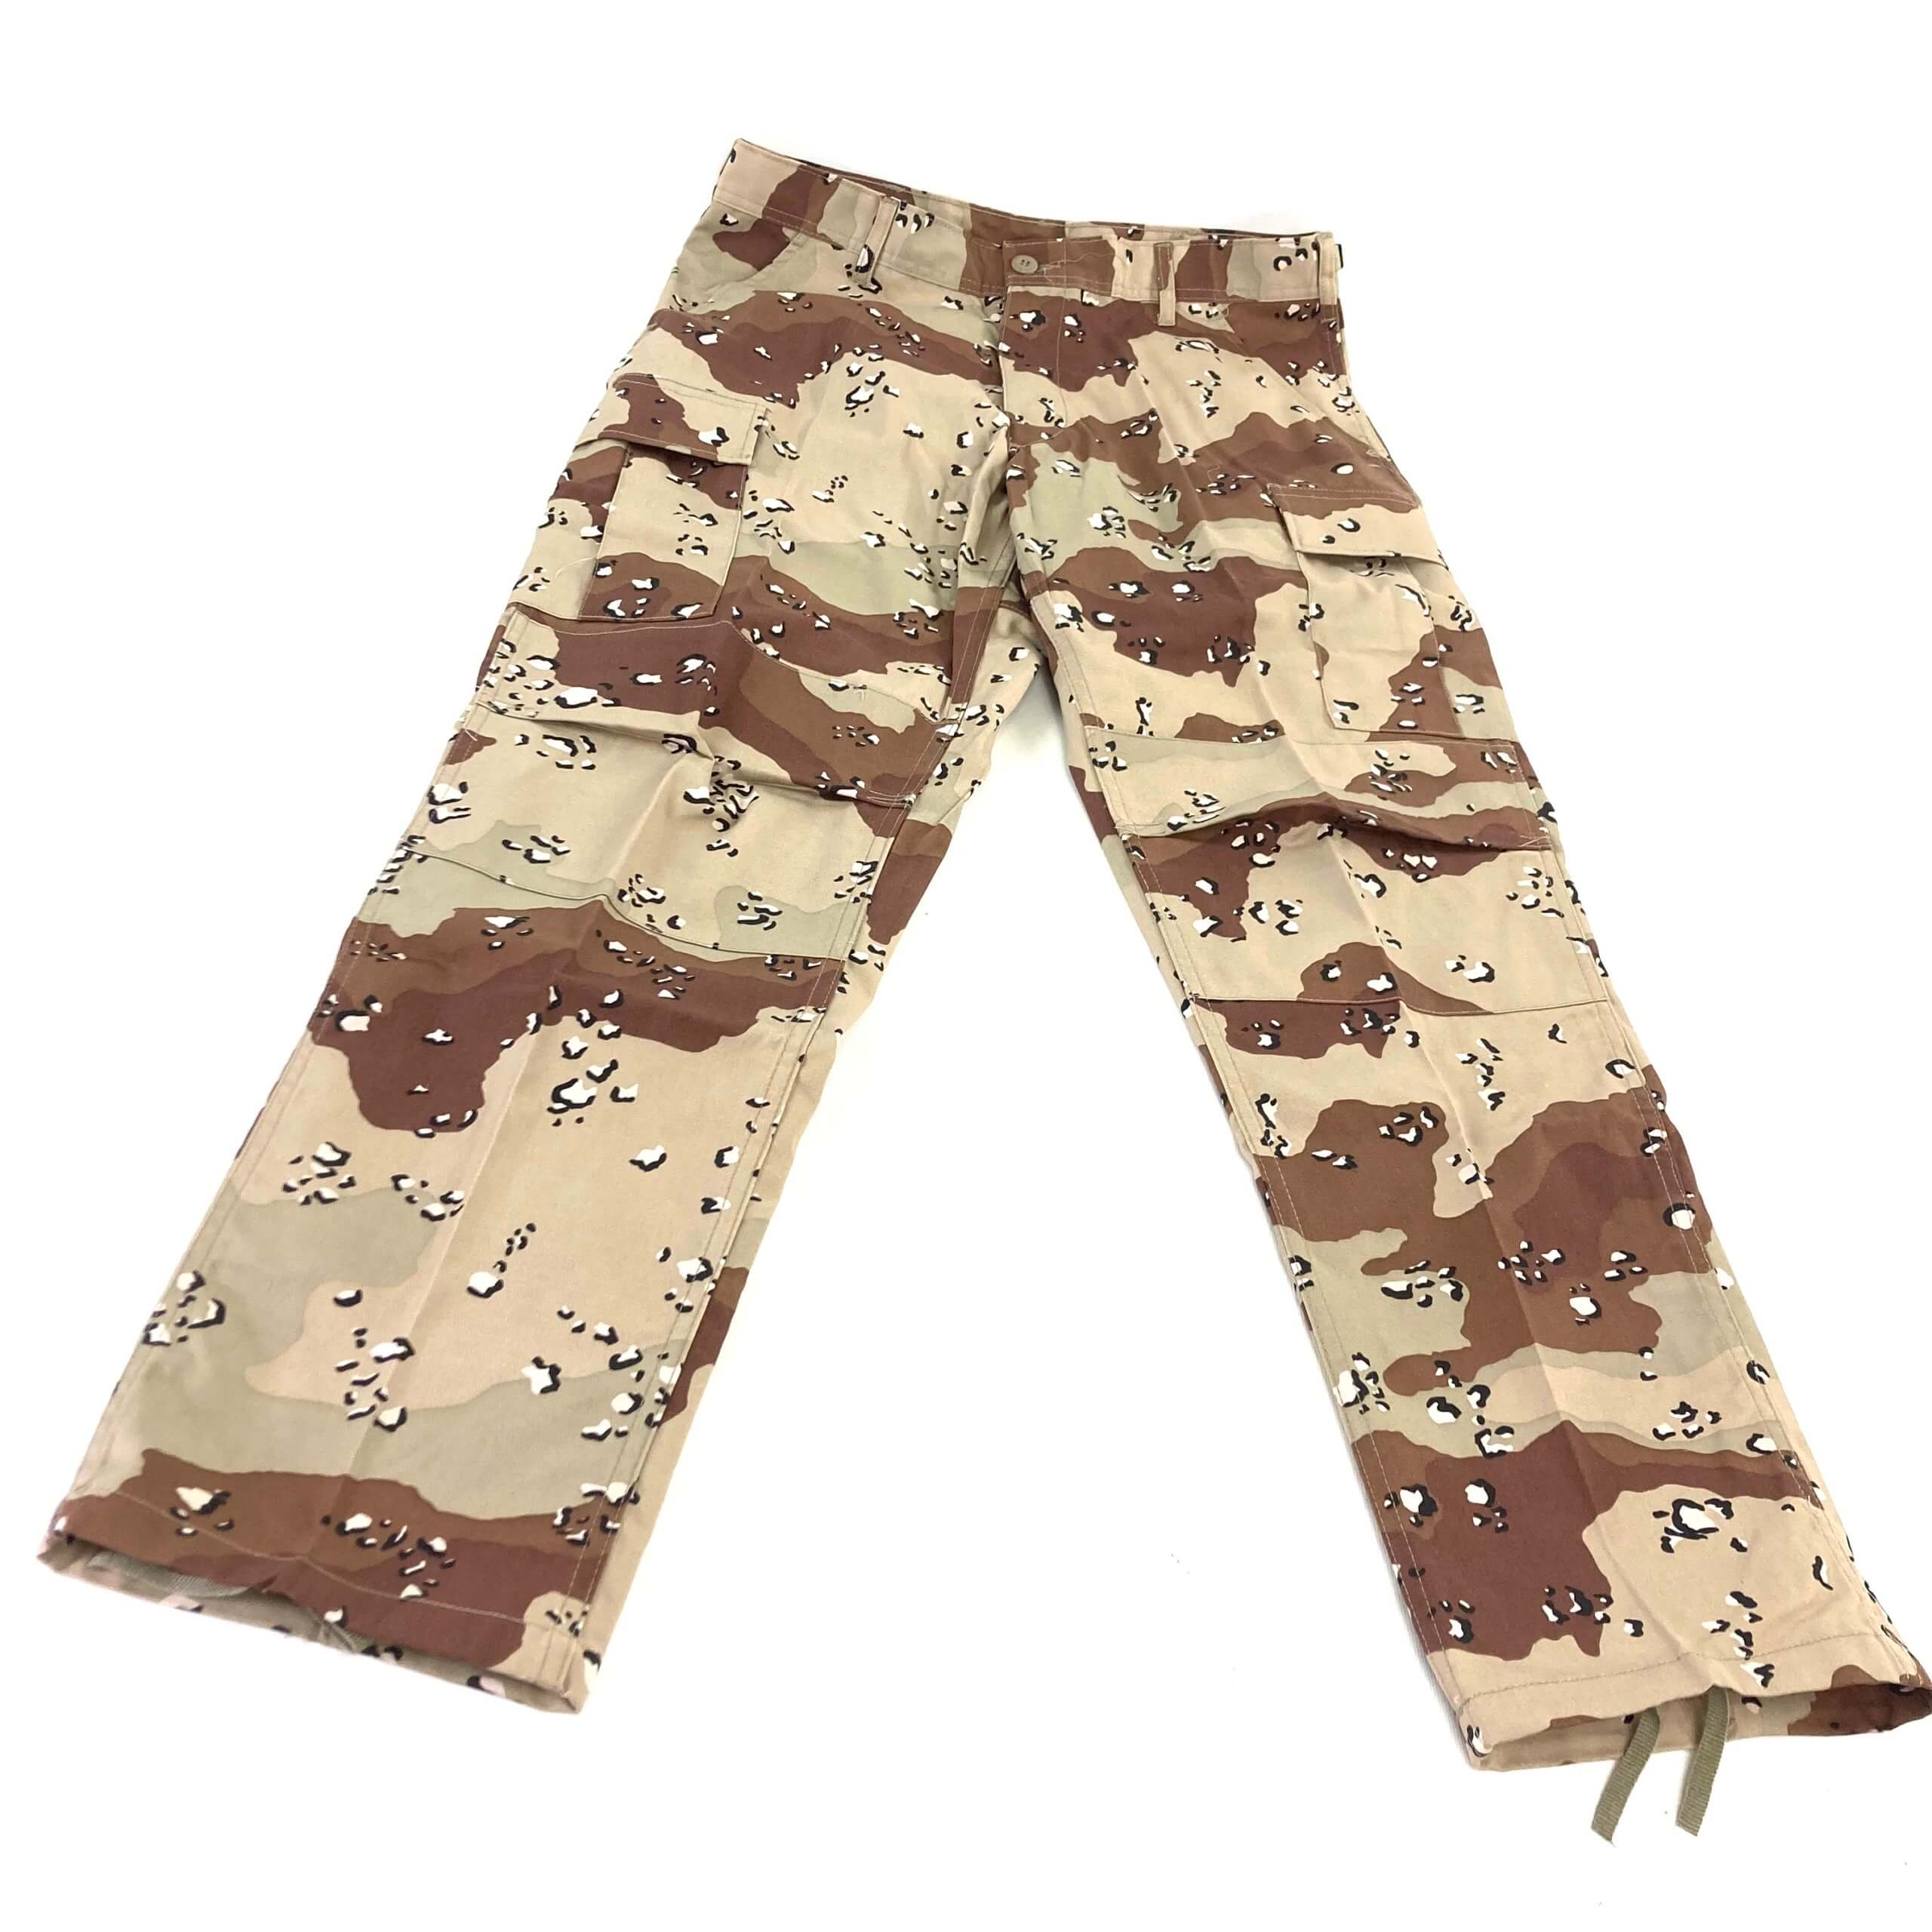 Rothco Tri-Color Desert Camo Tactical BDU Pants - Venture Surplus